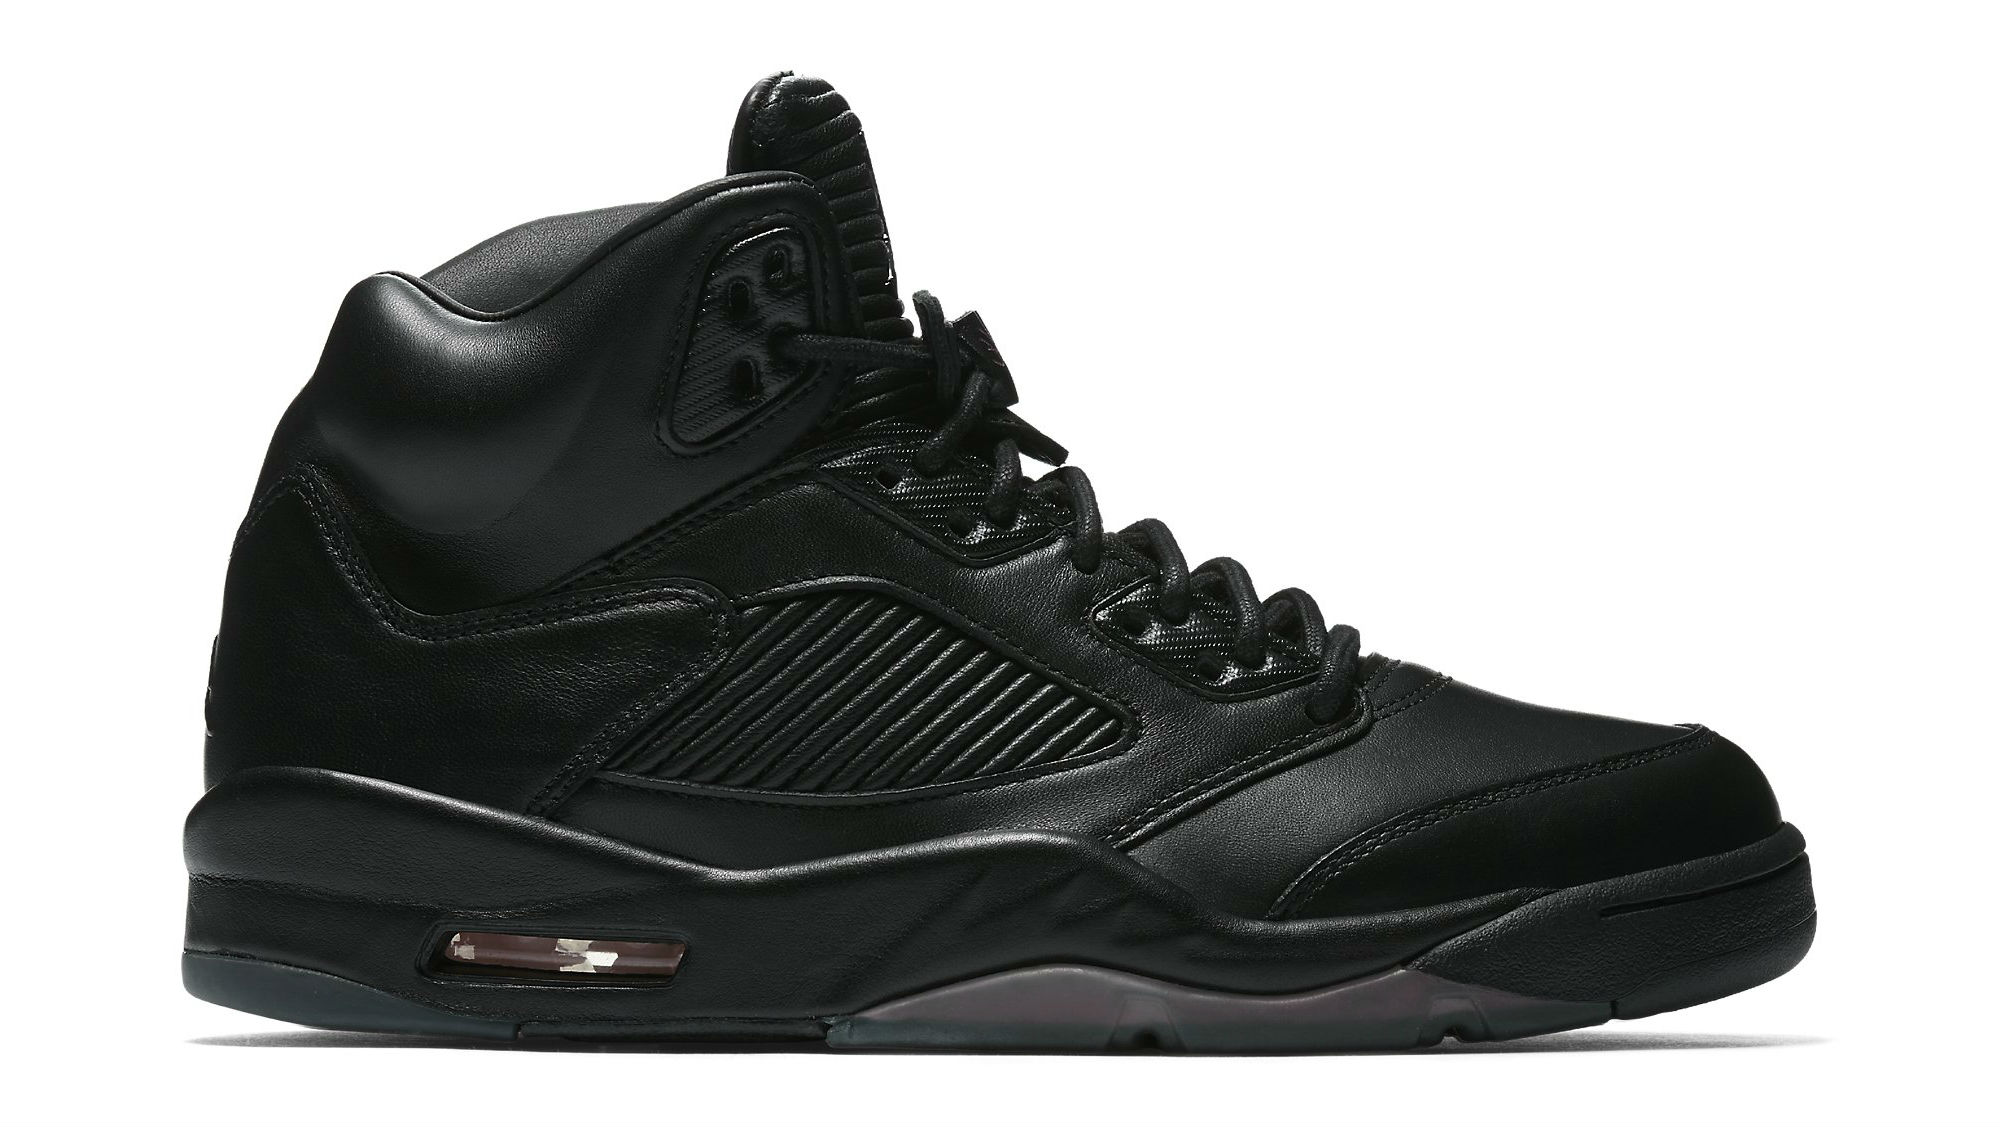 Air Jordan 5 Premium Black Release Date 881432 010